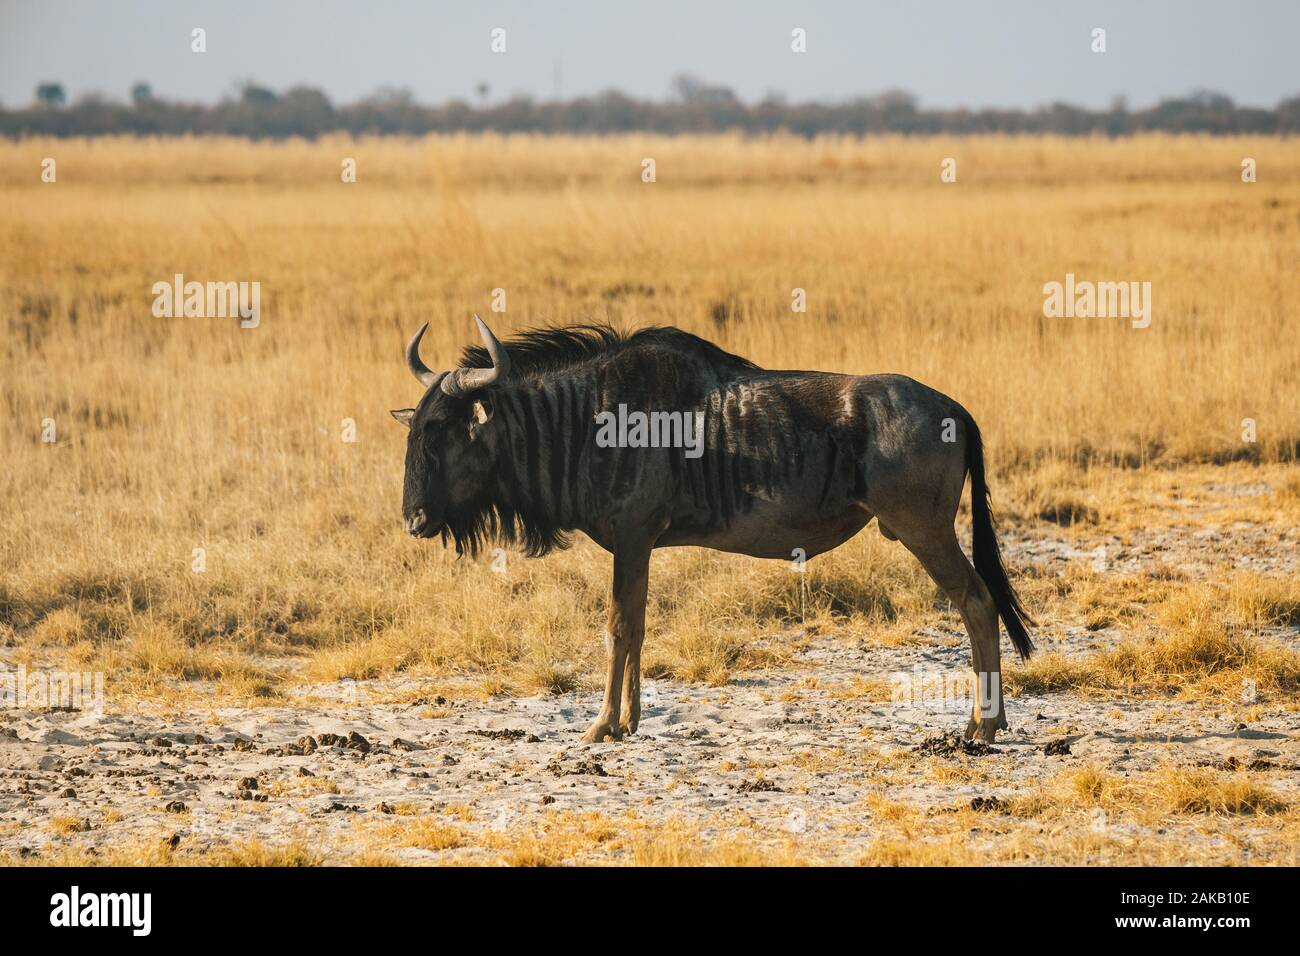 El ñu azul de pie en el Makgadikgadi Pans en un paisaje de sabana seca con hierba dorada Foto de stock